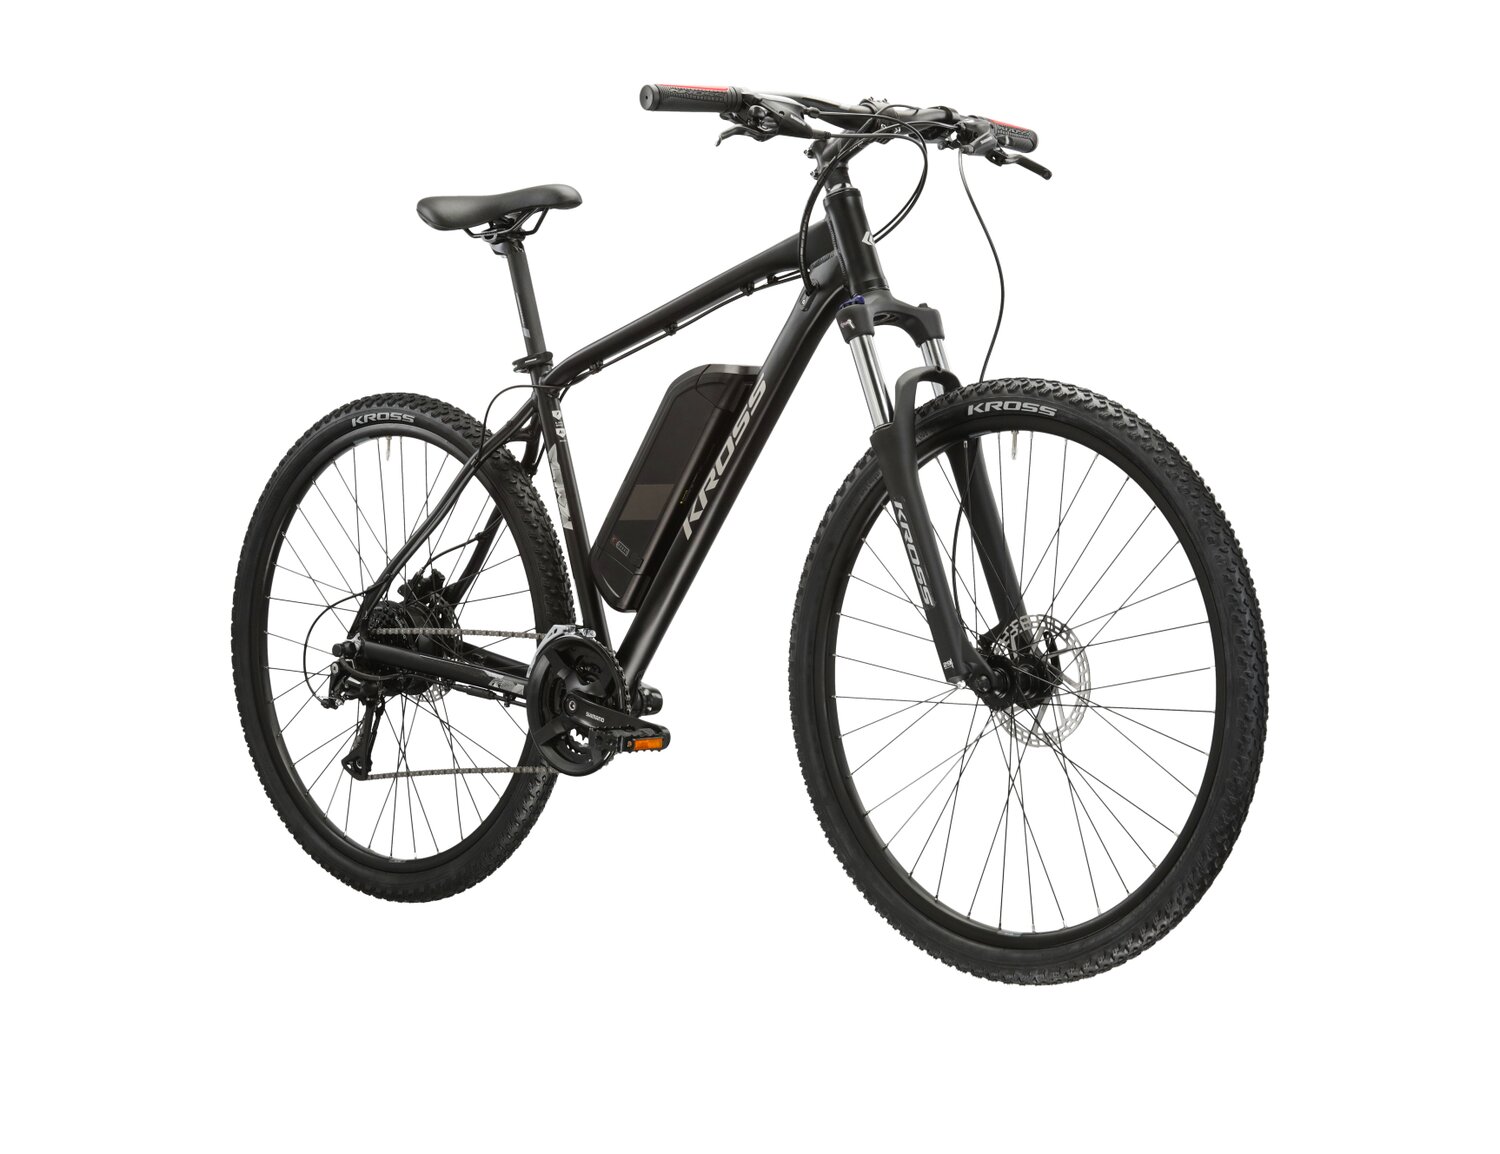 Elektryczny rower górski MTB Kross Berg Boost 1.0 522 Wh na aluminiowej ramie w kolorze czarnym wyposażony w osprzęt Shimano i napęd elektryczny Bafang